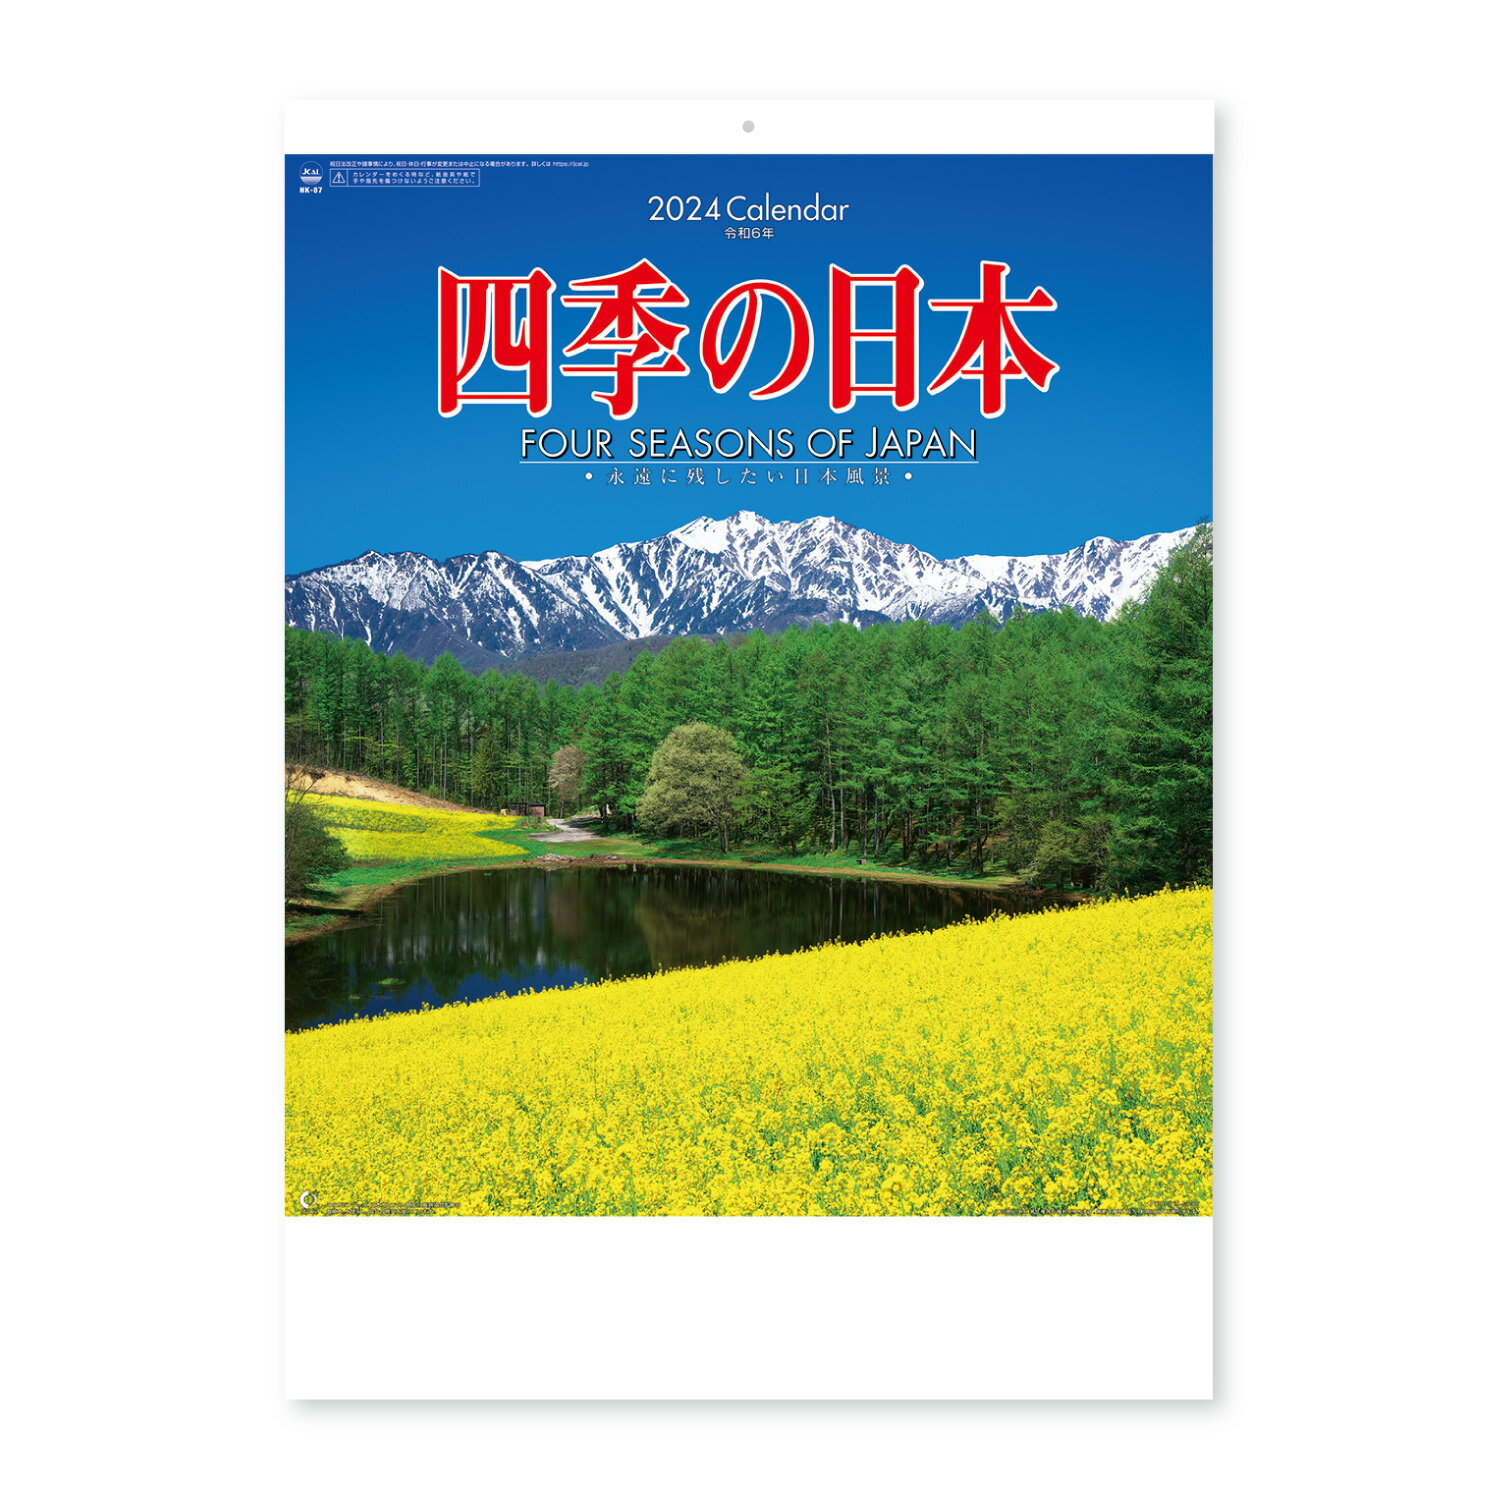 癒やし効果大の風景カレンダー。 日本の四季の移ろいが楽しめます。数字と曜日が見やすく実用的。　 サイズ：535×380mm　13枚 紙製本